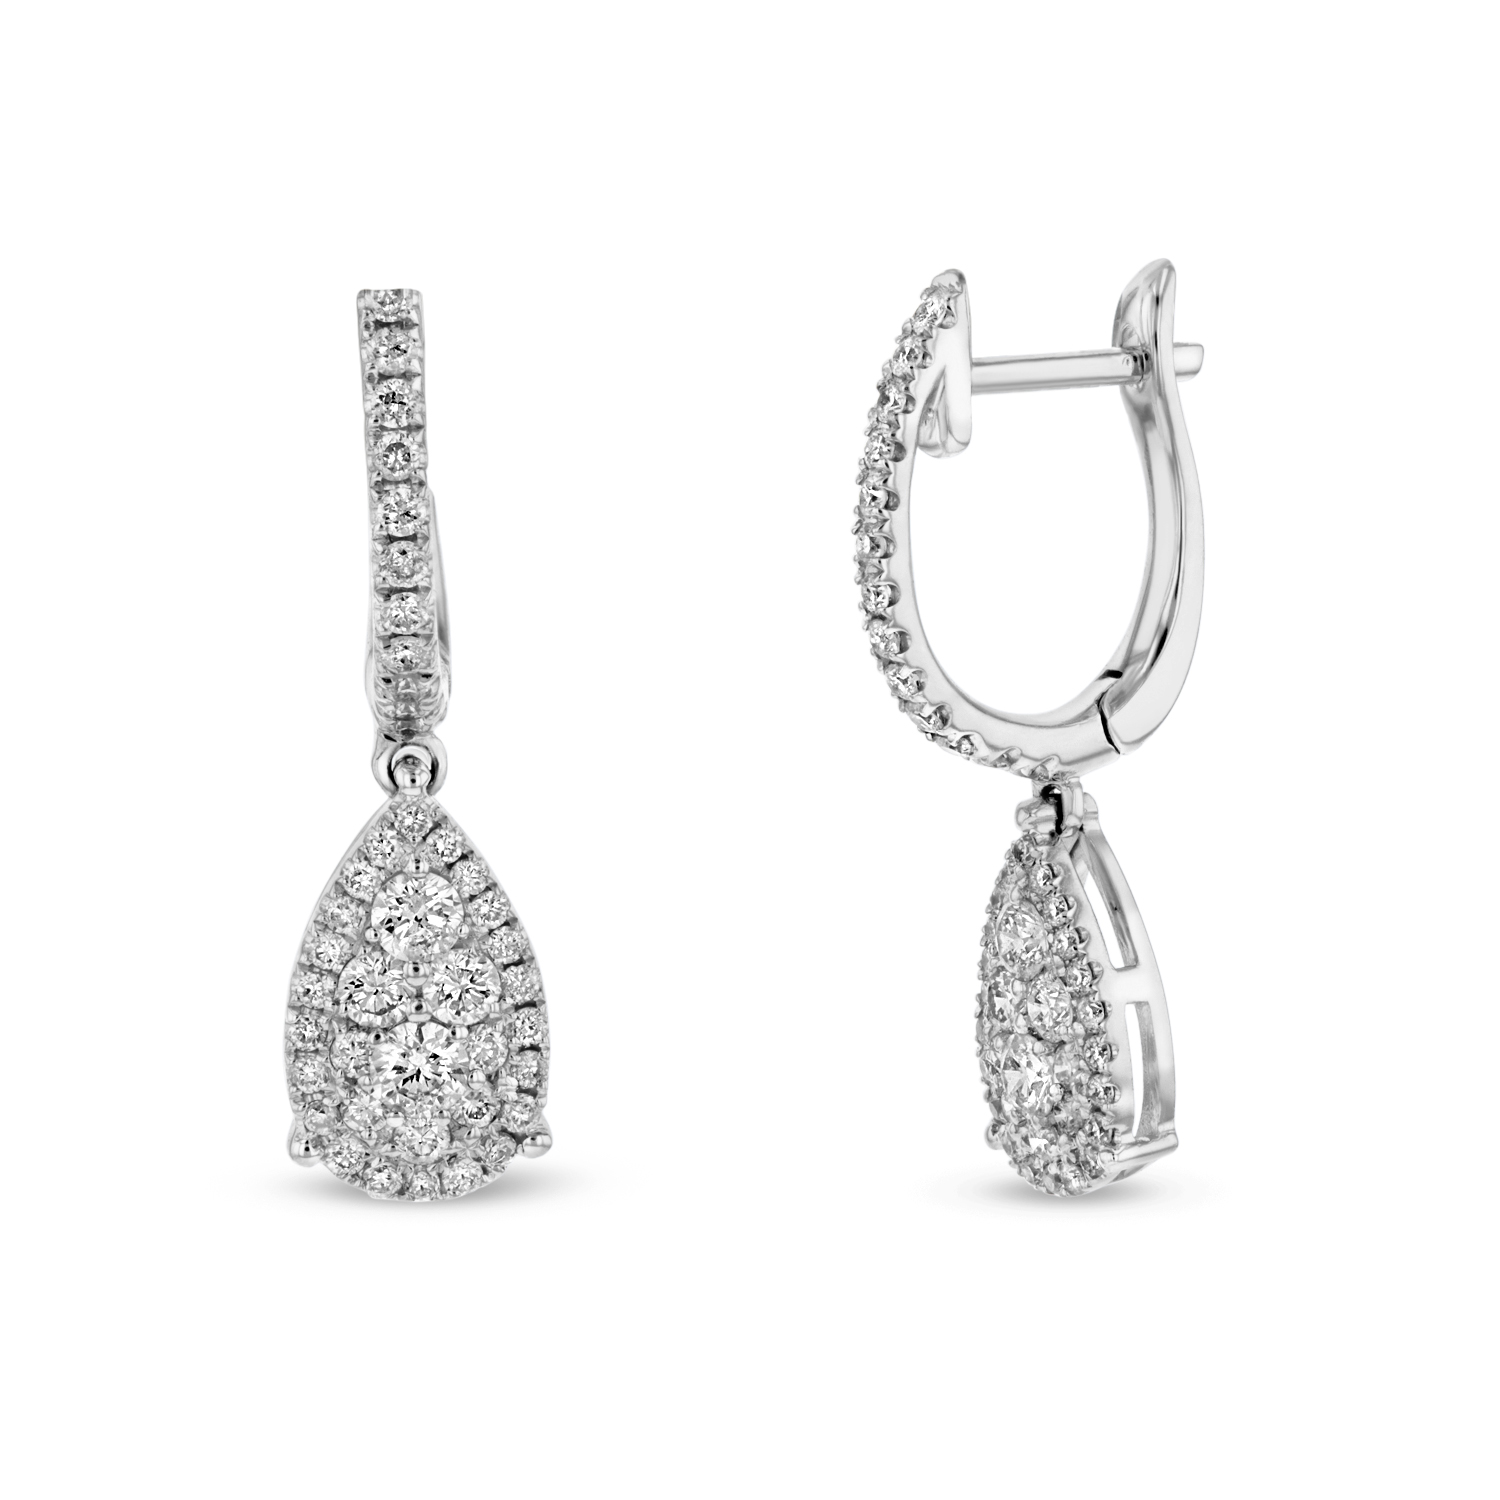 View 0.63ctw Diamond Fashion Tear Drop Earrings in 18k WG